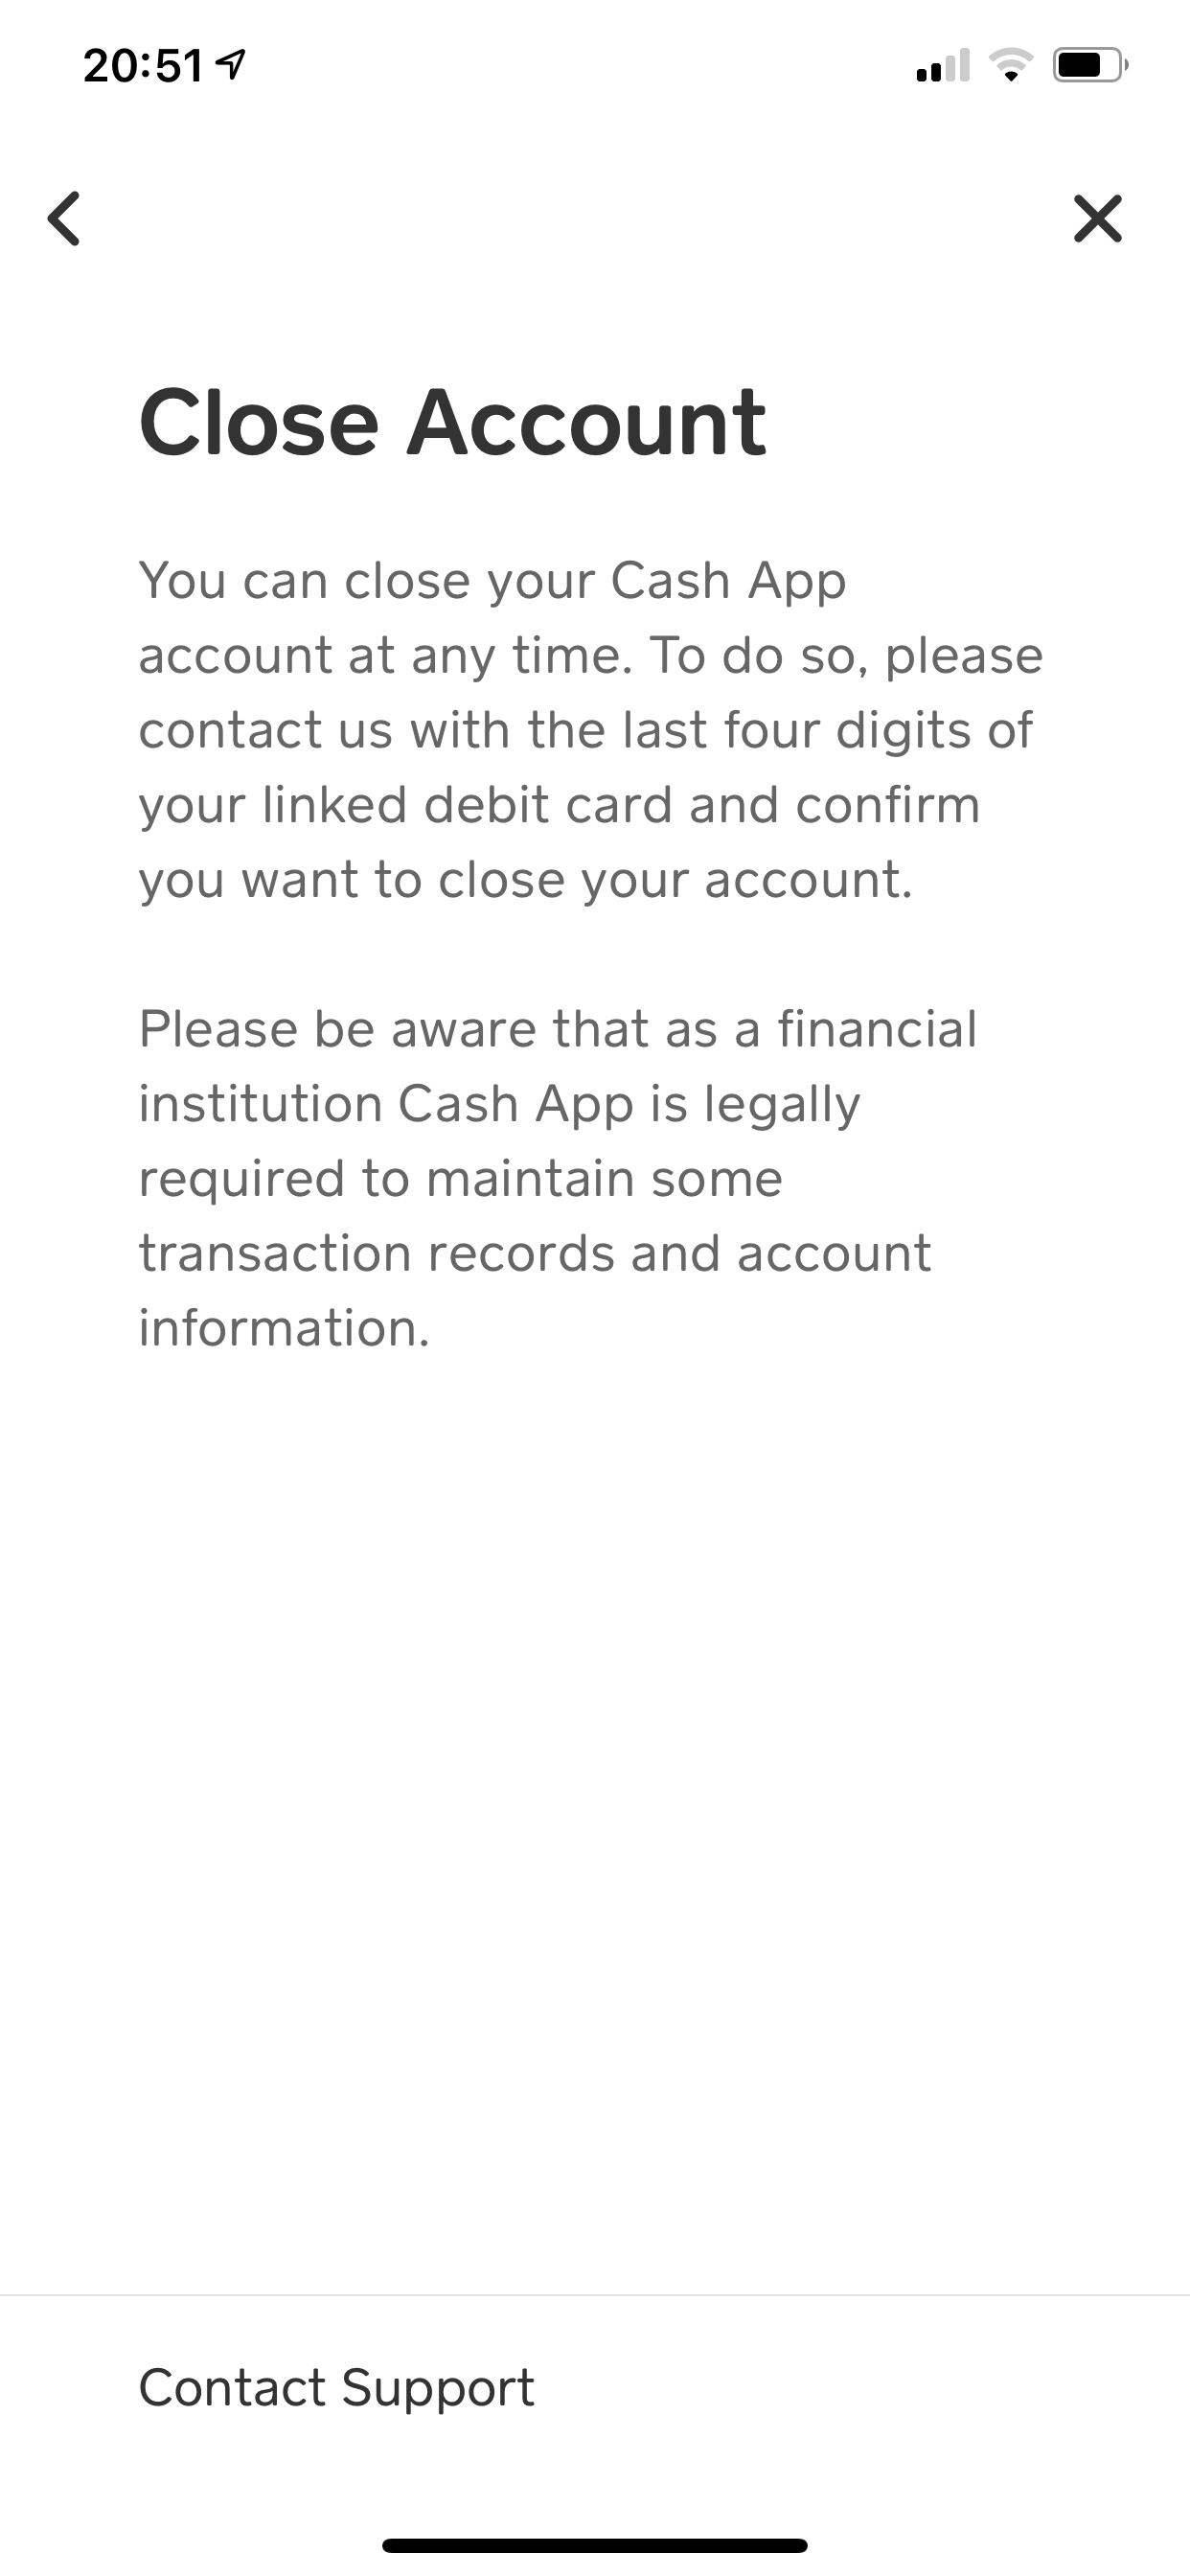 The close account screen in Cash App.